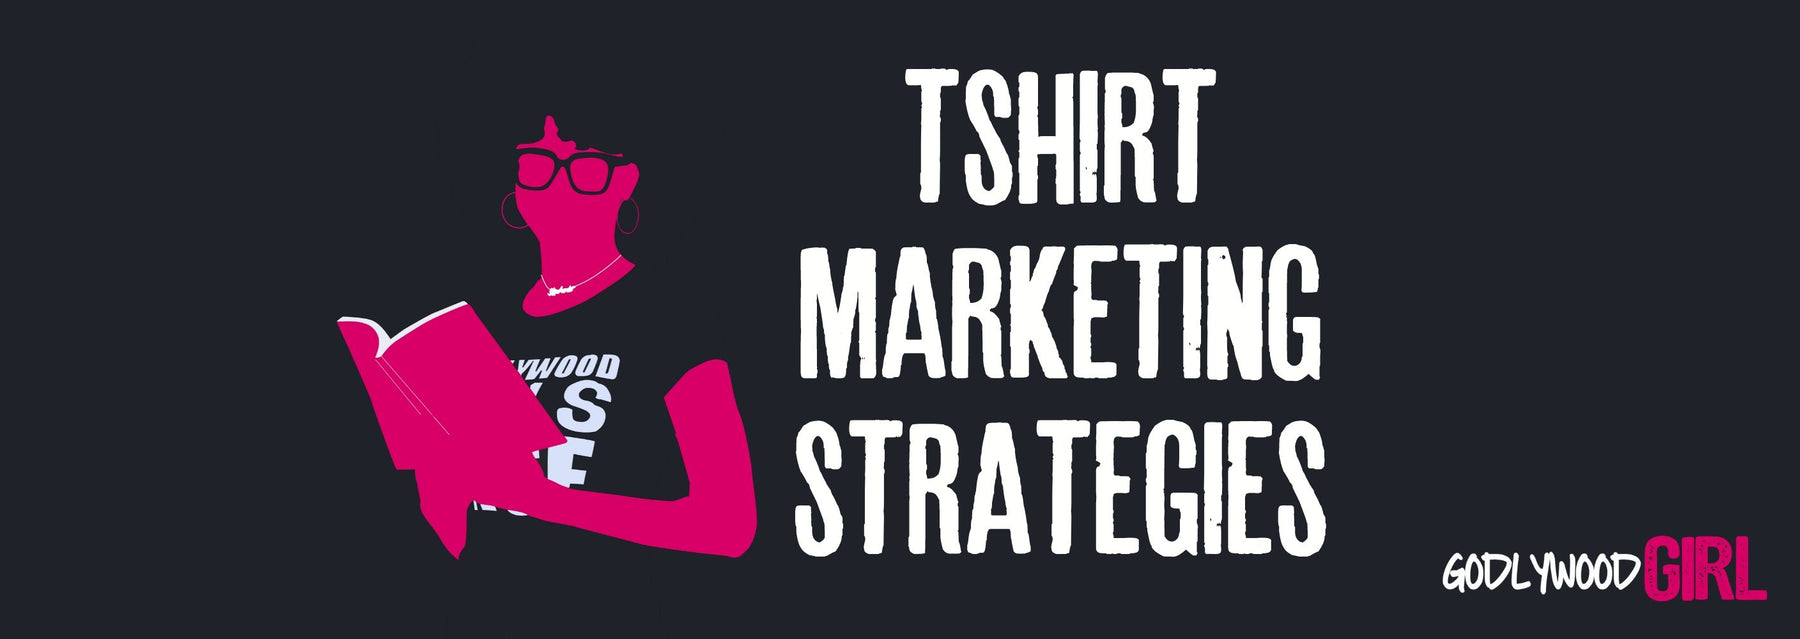 T SHIRT MARKETING (TShirt Marketing Strategies For A Christian T Shirt Business)| Christian T-Shirts